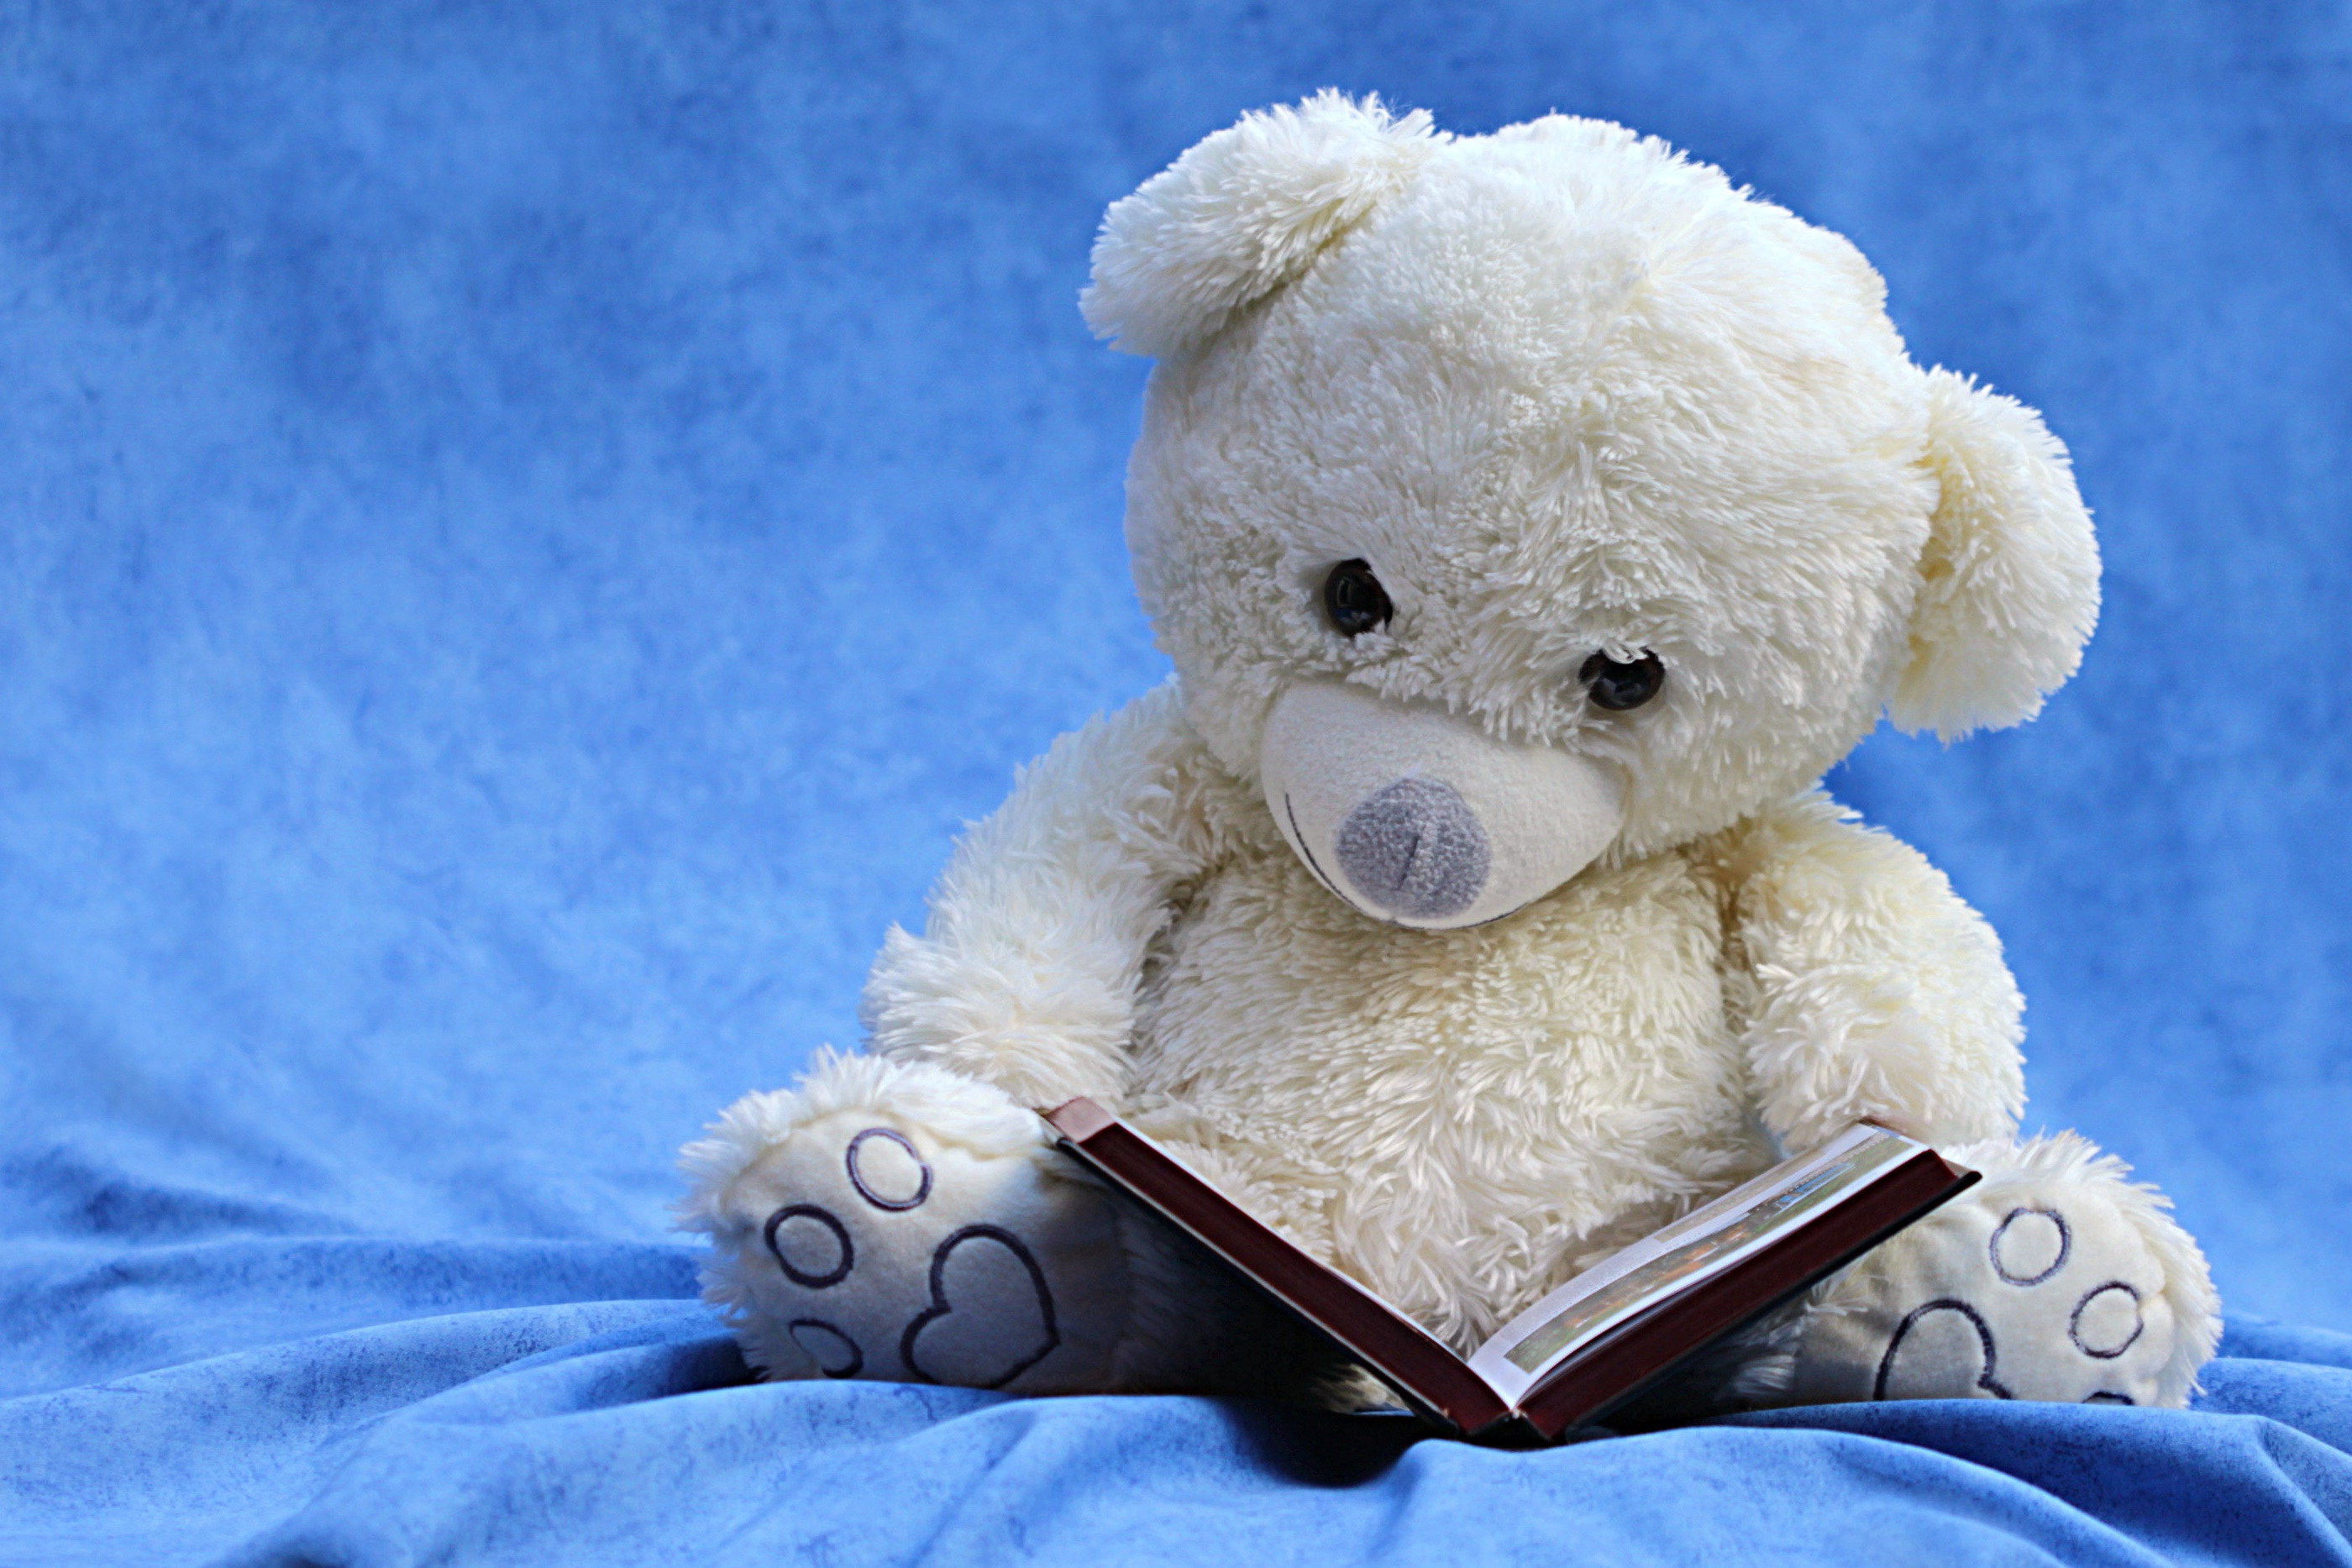 Gấu Trúc Hình Ảnh Đen Và - Ảnh miễn phí trên Pixabay - Pixabay